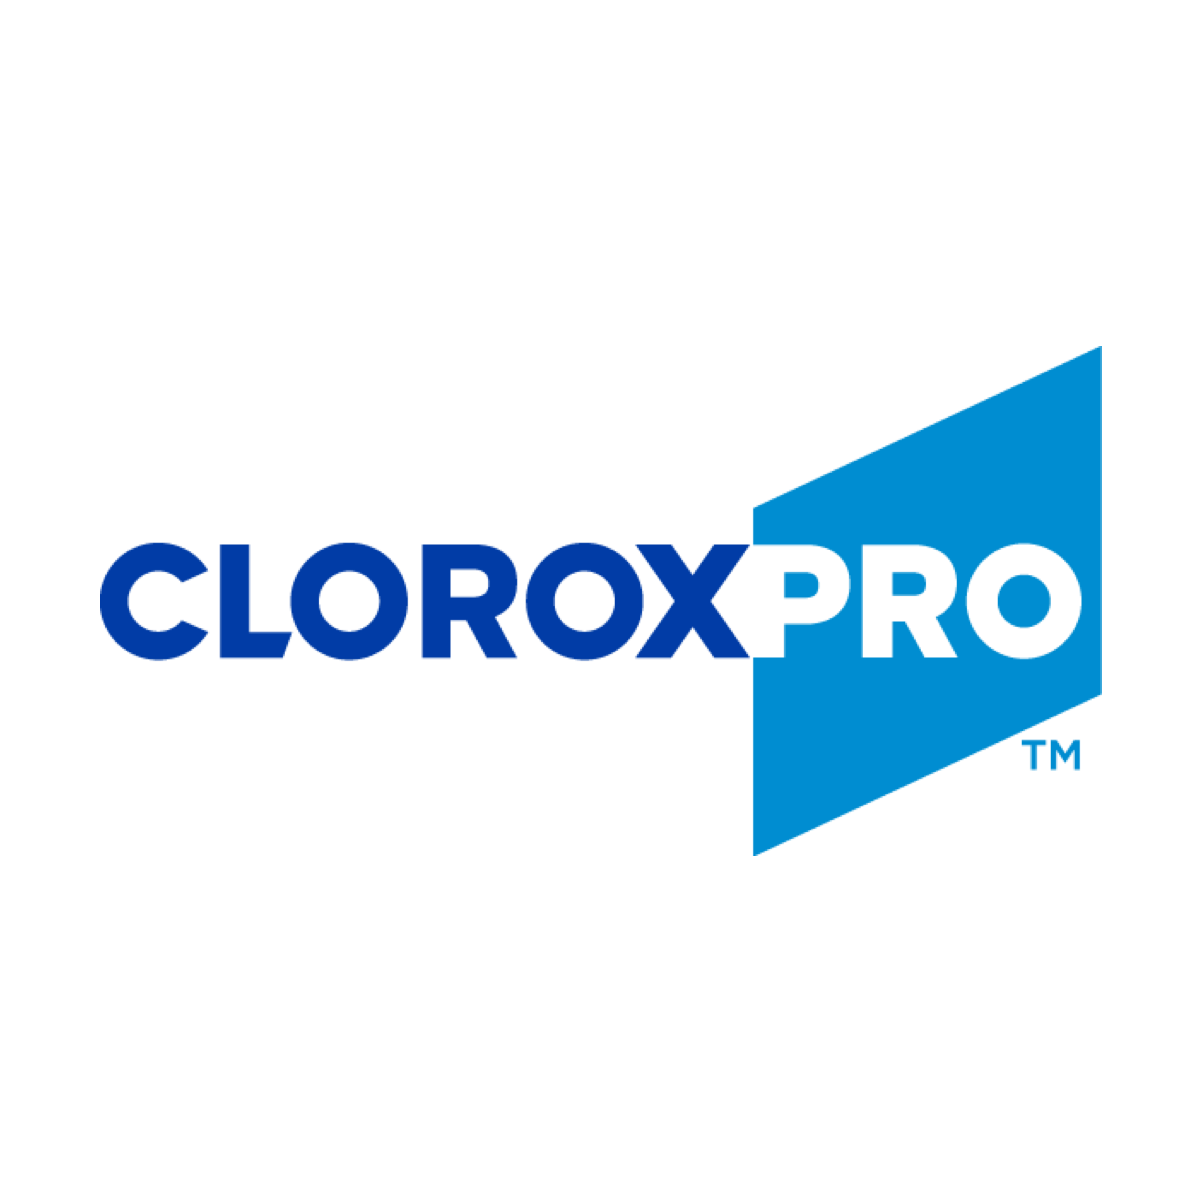 CloroxPro